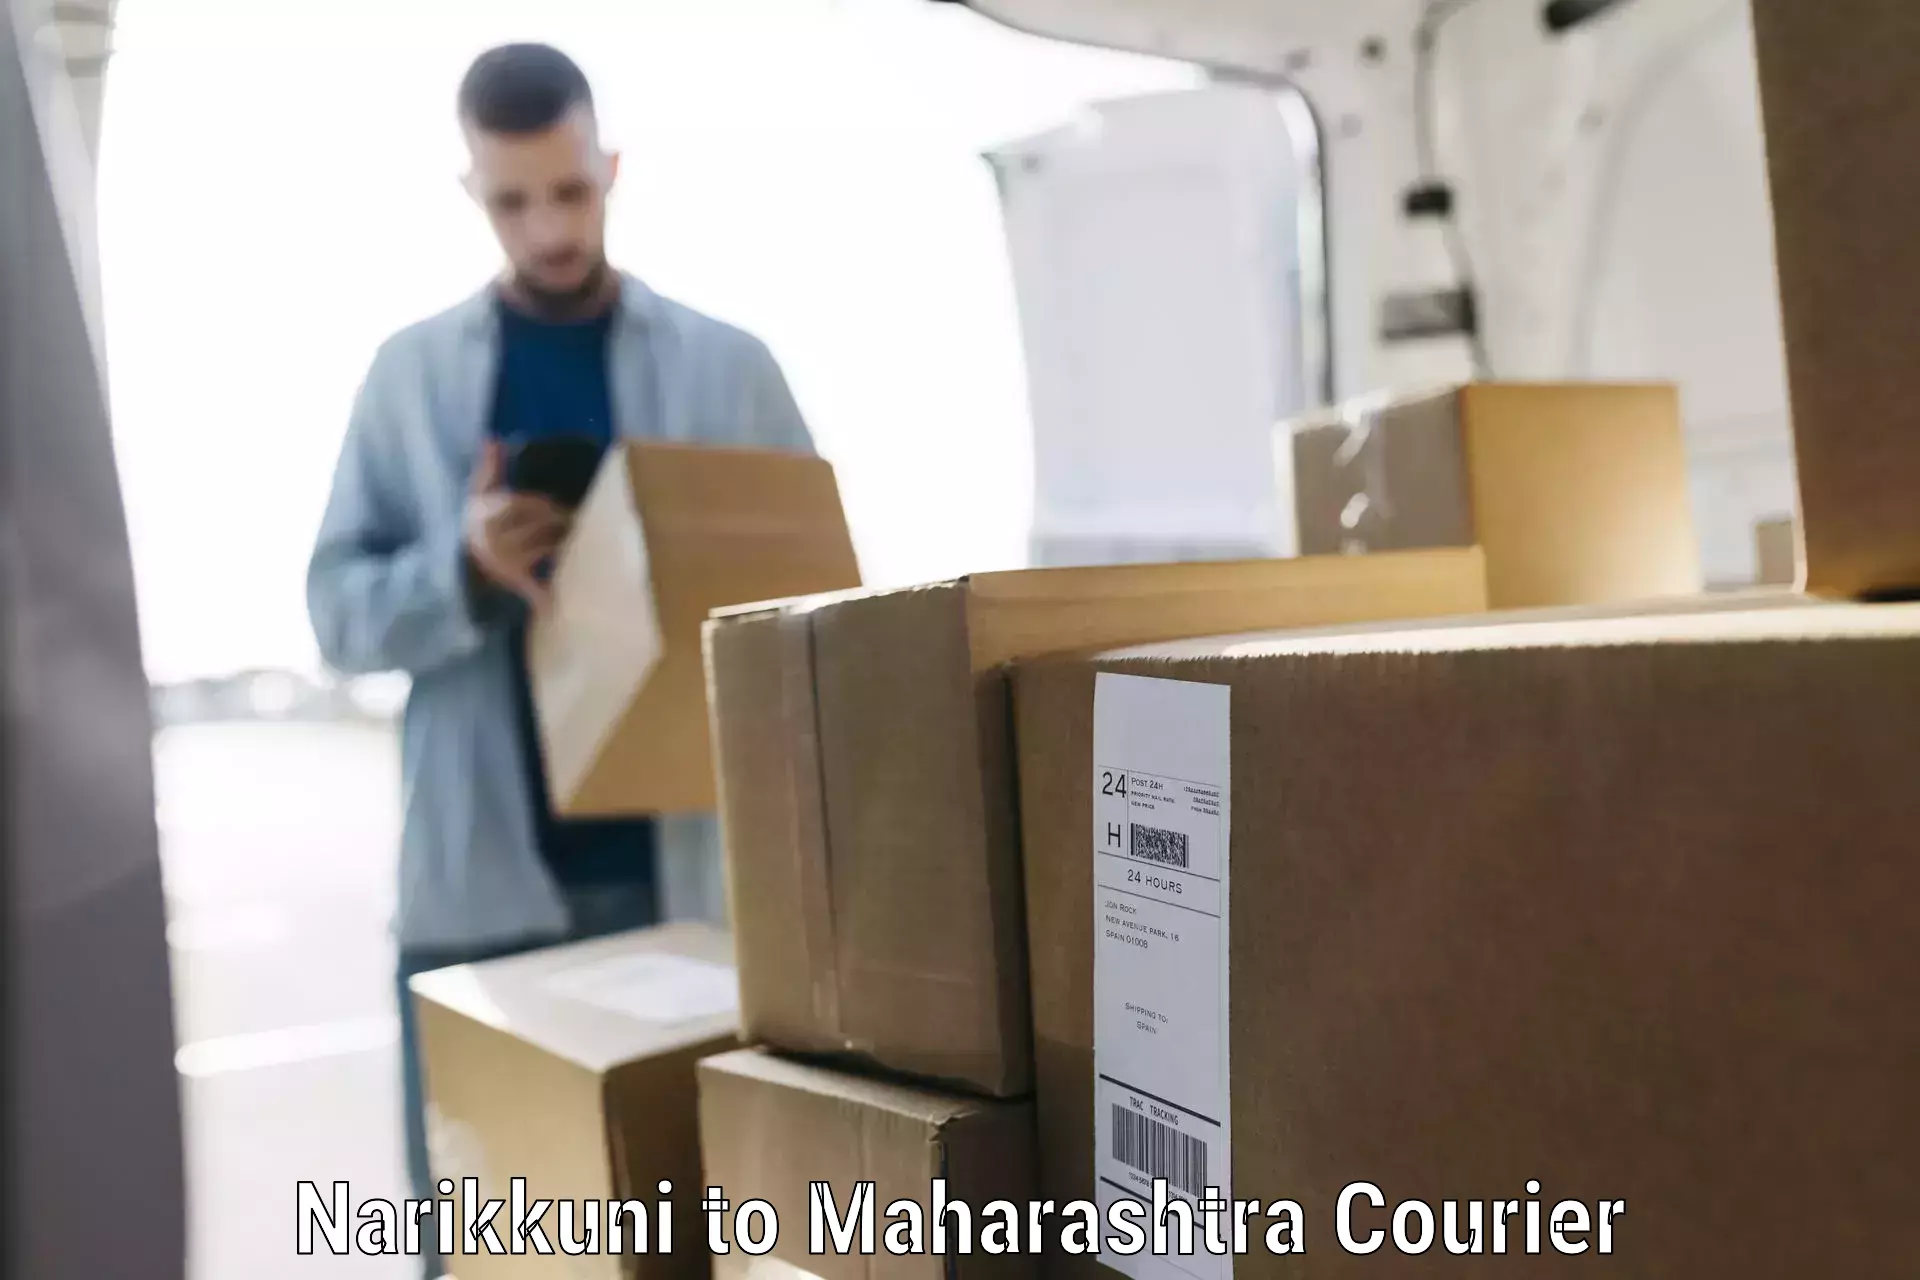 Luggage shipping guide Narikkuni to Maharashtra